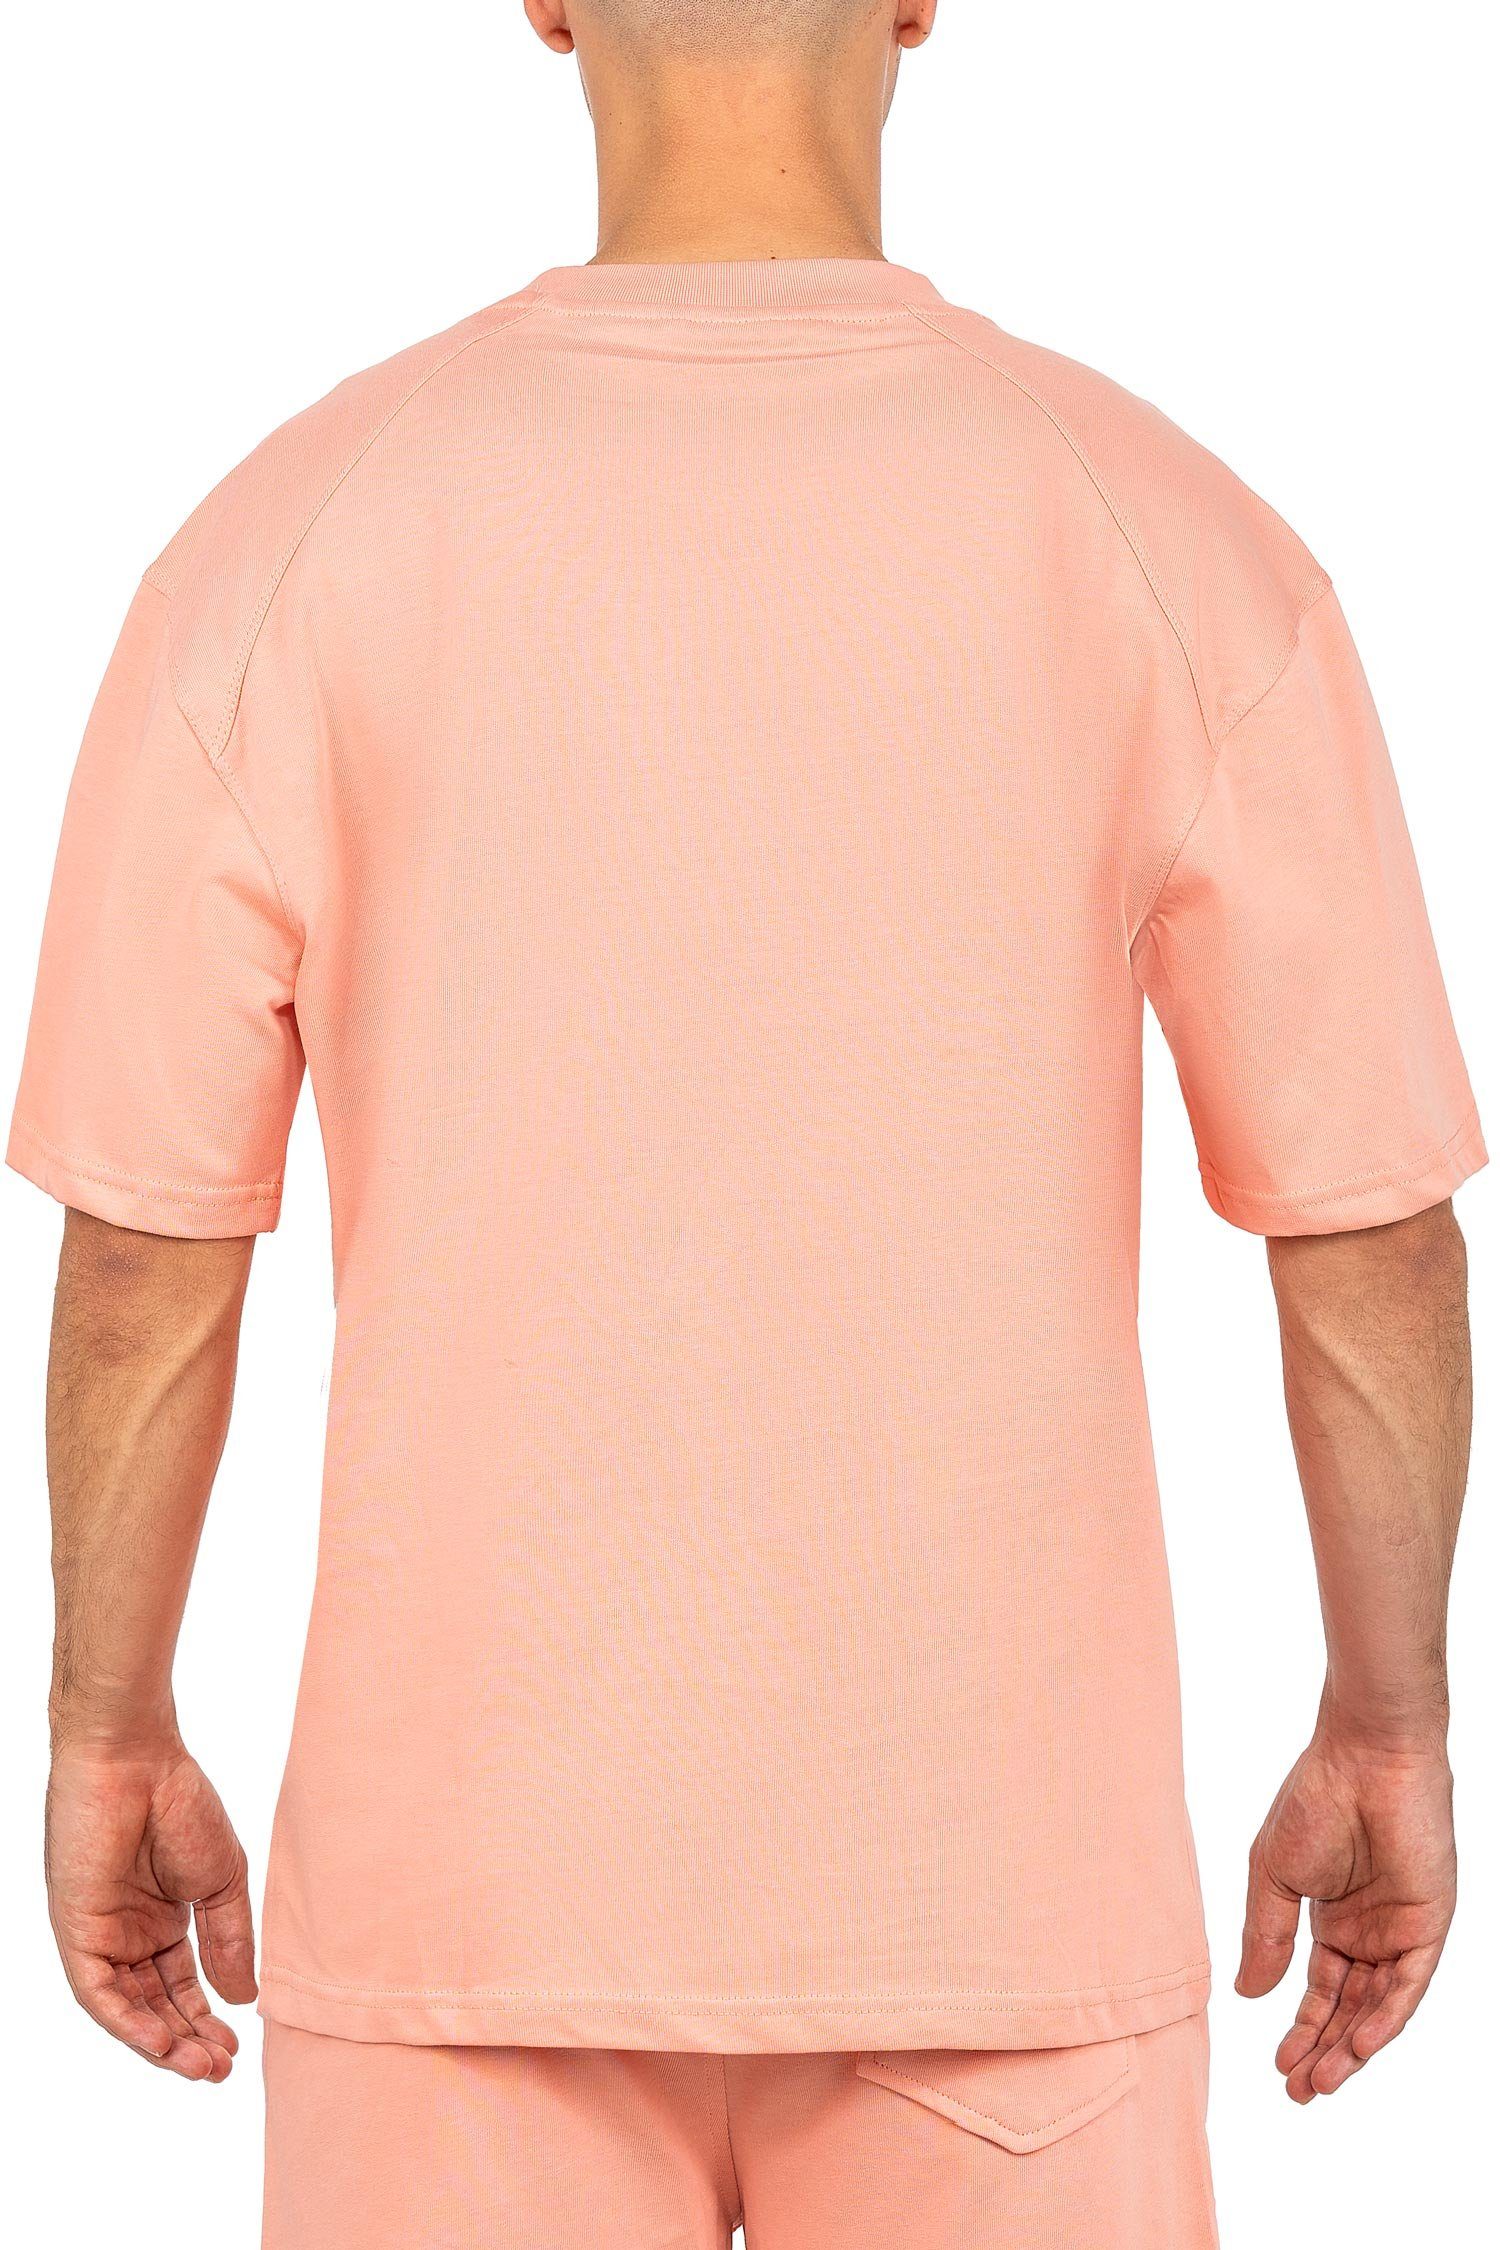 Reichstadt Oversize-Shirt Casual T-shirt (1-tlg) Stitching der mit altrosa 22RS033 auf Brust